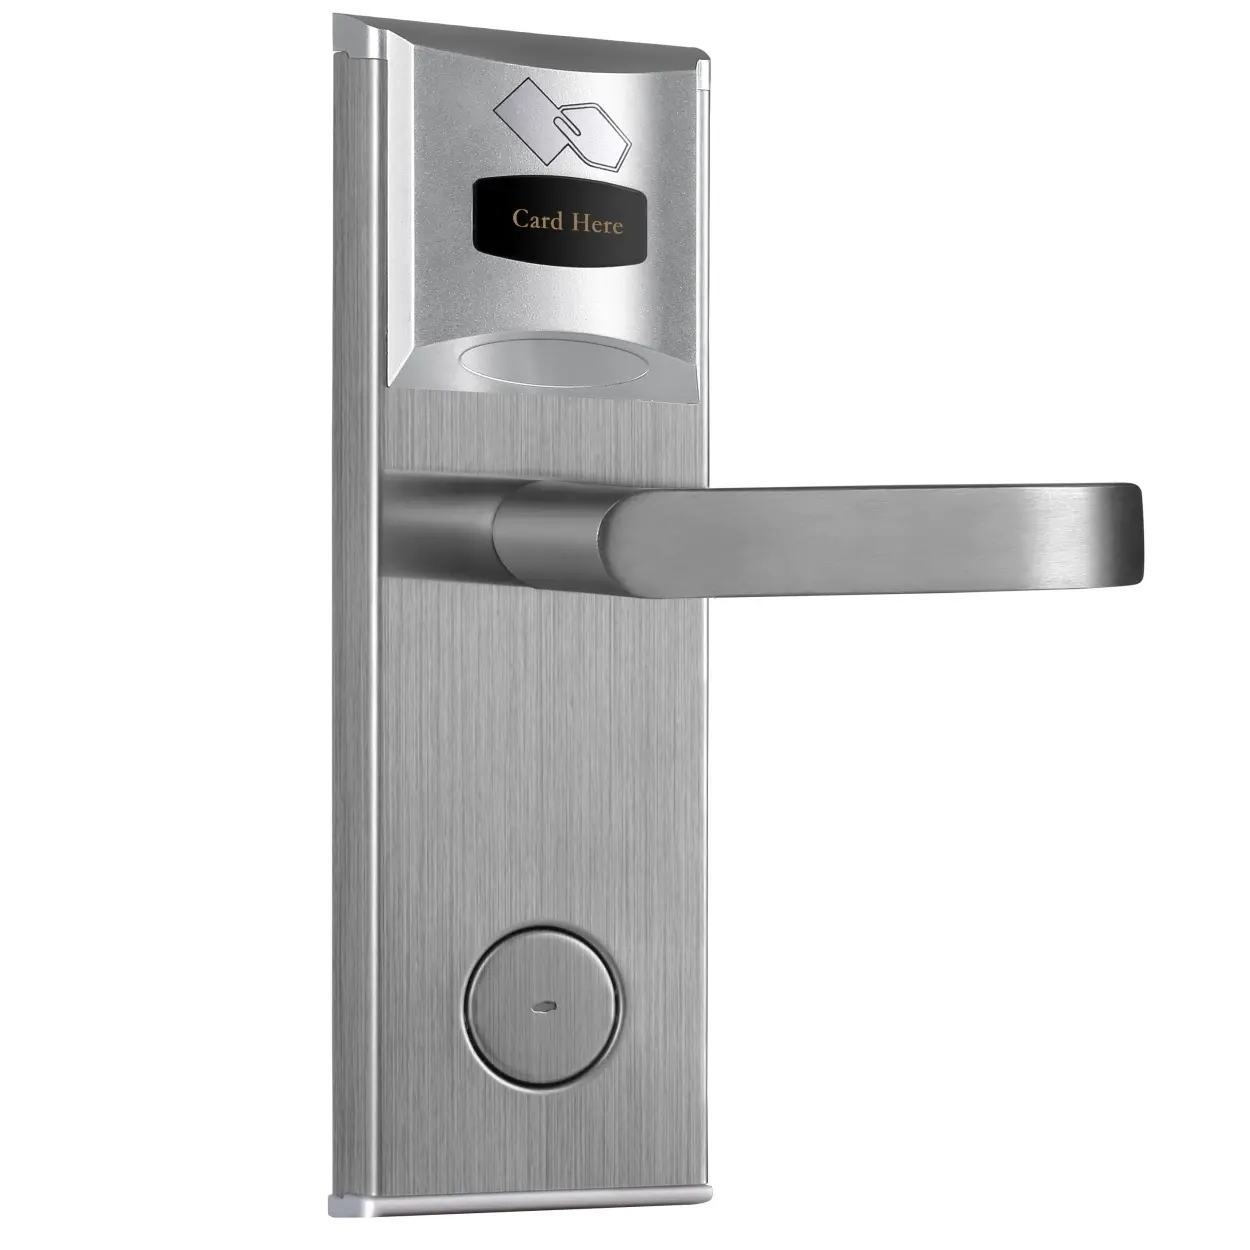 Kunci pintu kartu hotel pintar, kunci mekanis dengan sistem manajemen kunci pintu ic hotel kunci pintu pintar